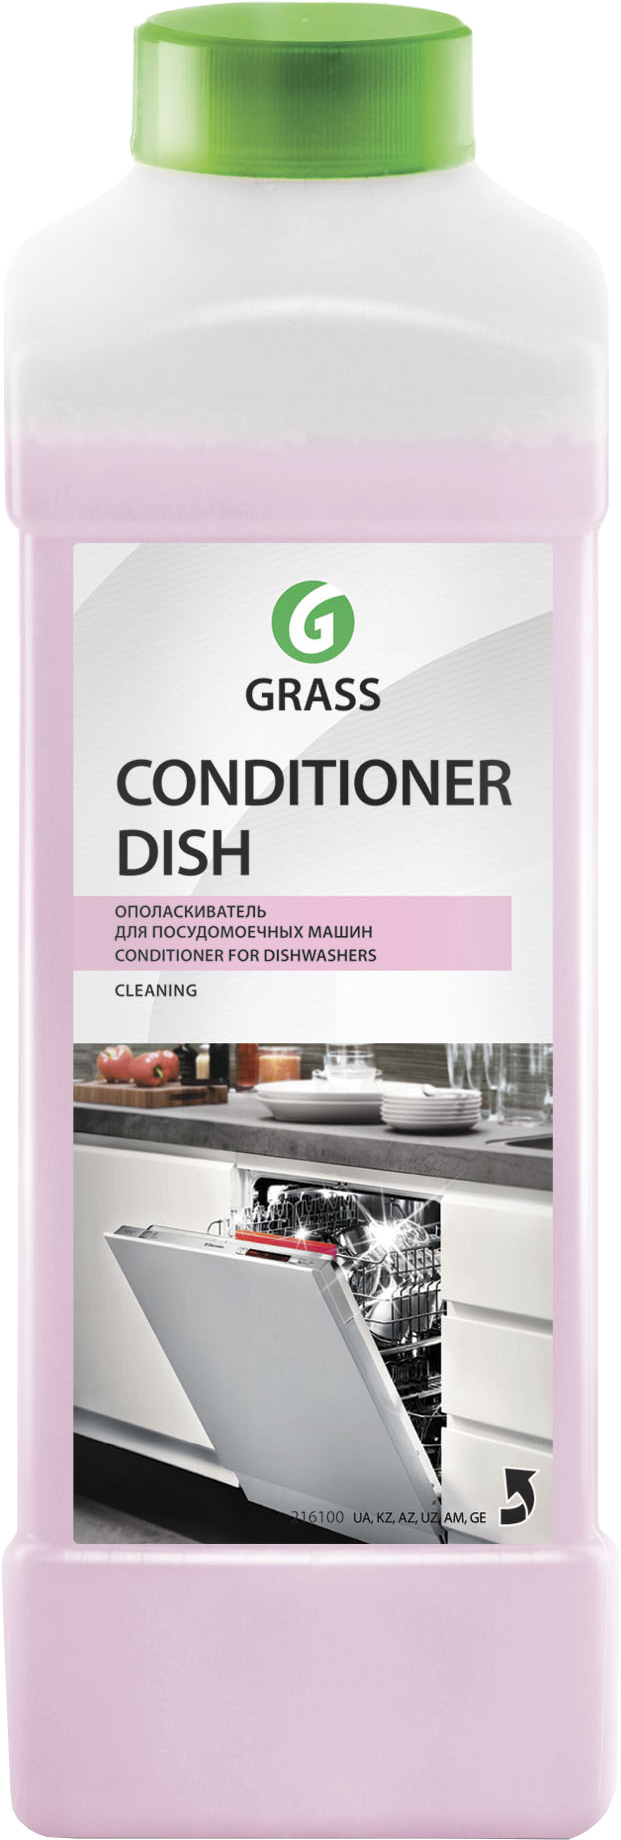 Ополаскиватель для посуды Grass Conditioner Dish для посудомоечных машин, 1 л